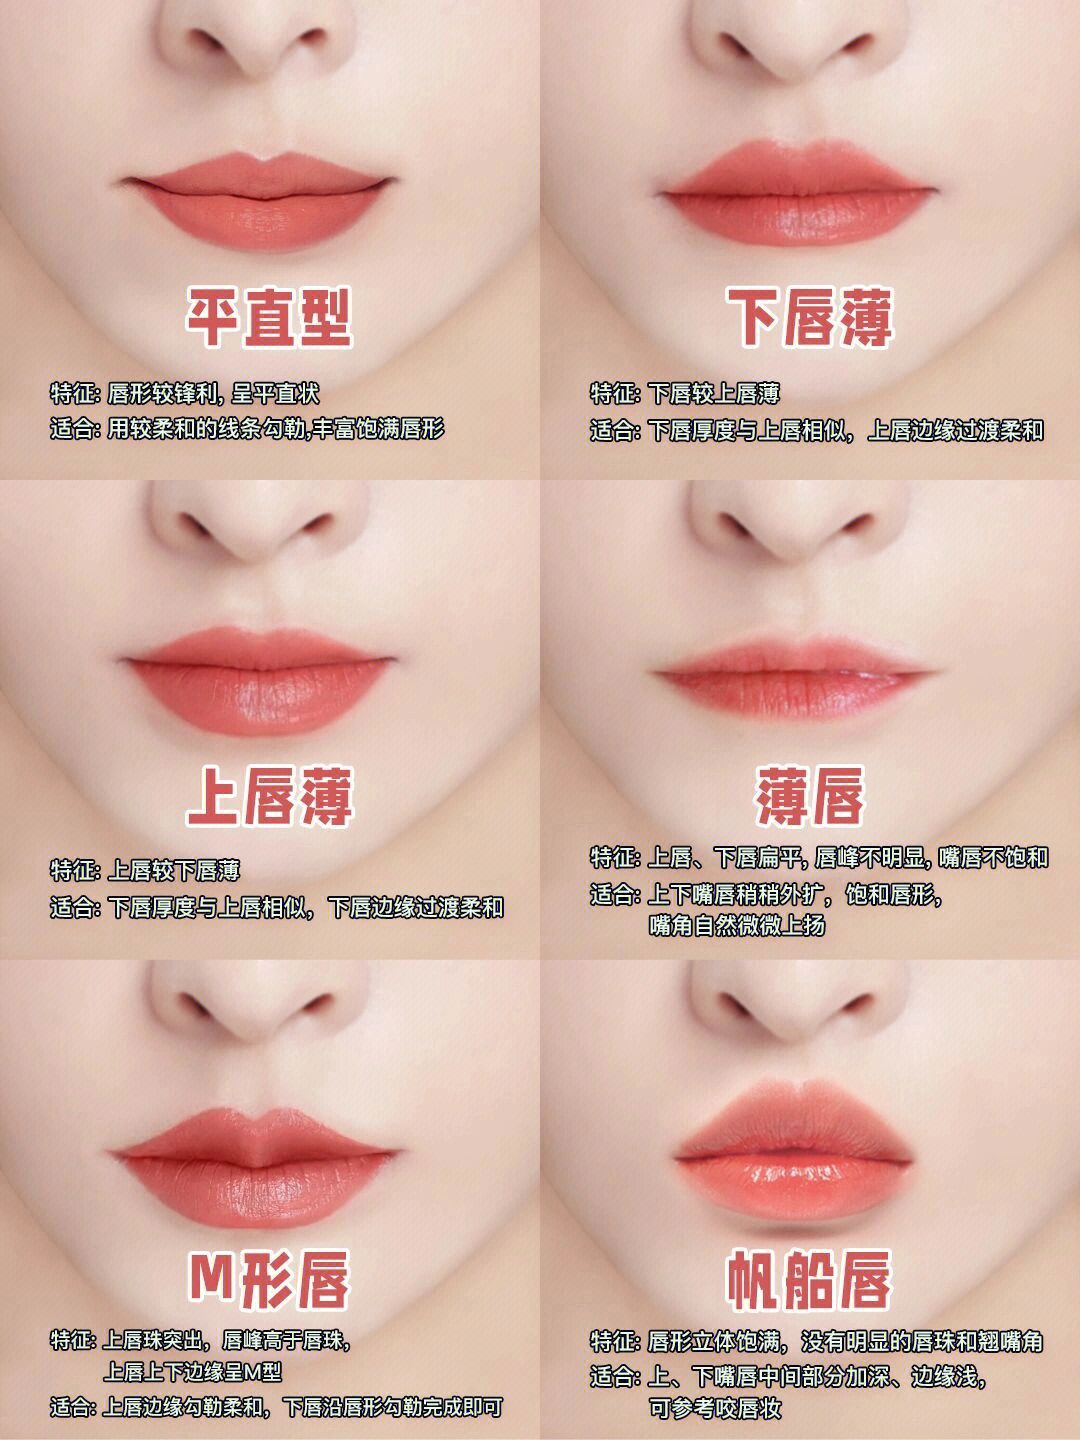 分享下不同唇部类型适合不同的画法11566平直型特征:唇形较锋利